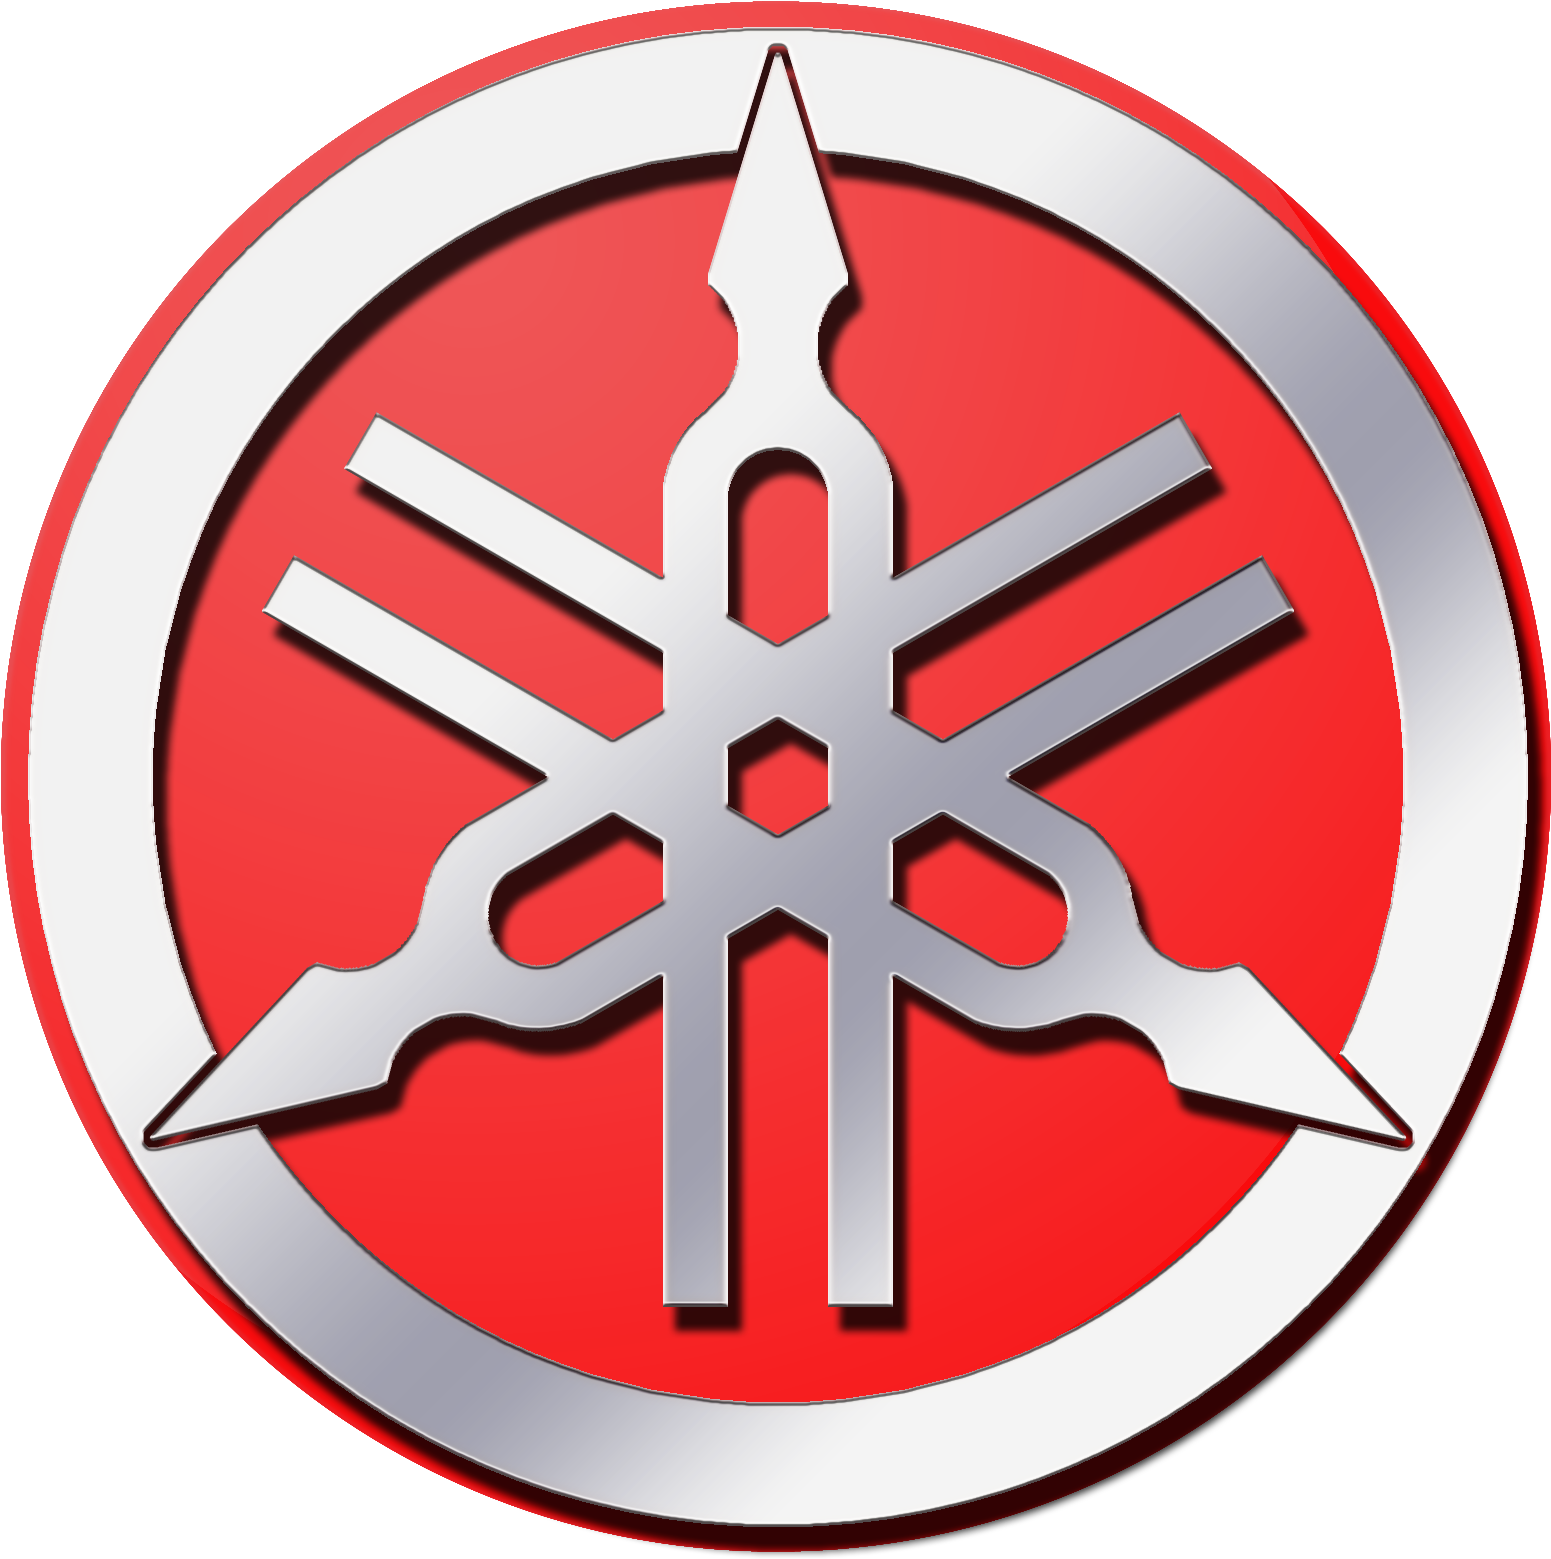 Yamaha Logo PNG Image File